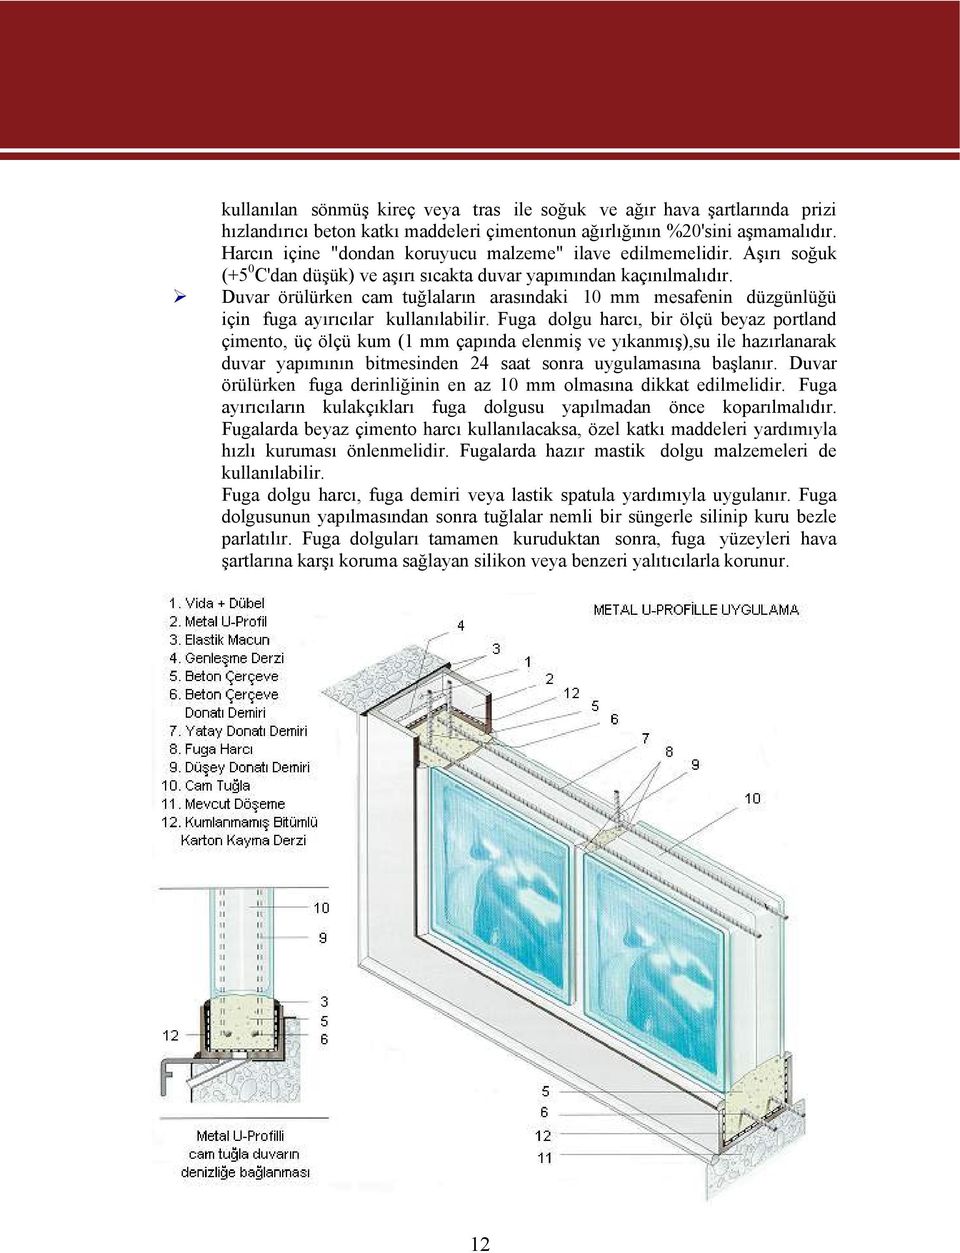 Duvar örülürken cam tuğlaların arasındaki 10 mm mesafenin düzgünlüğü için fuga ayırıcılar kullanılabilir.